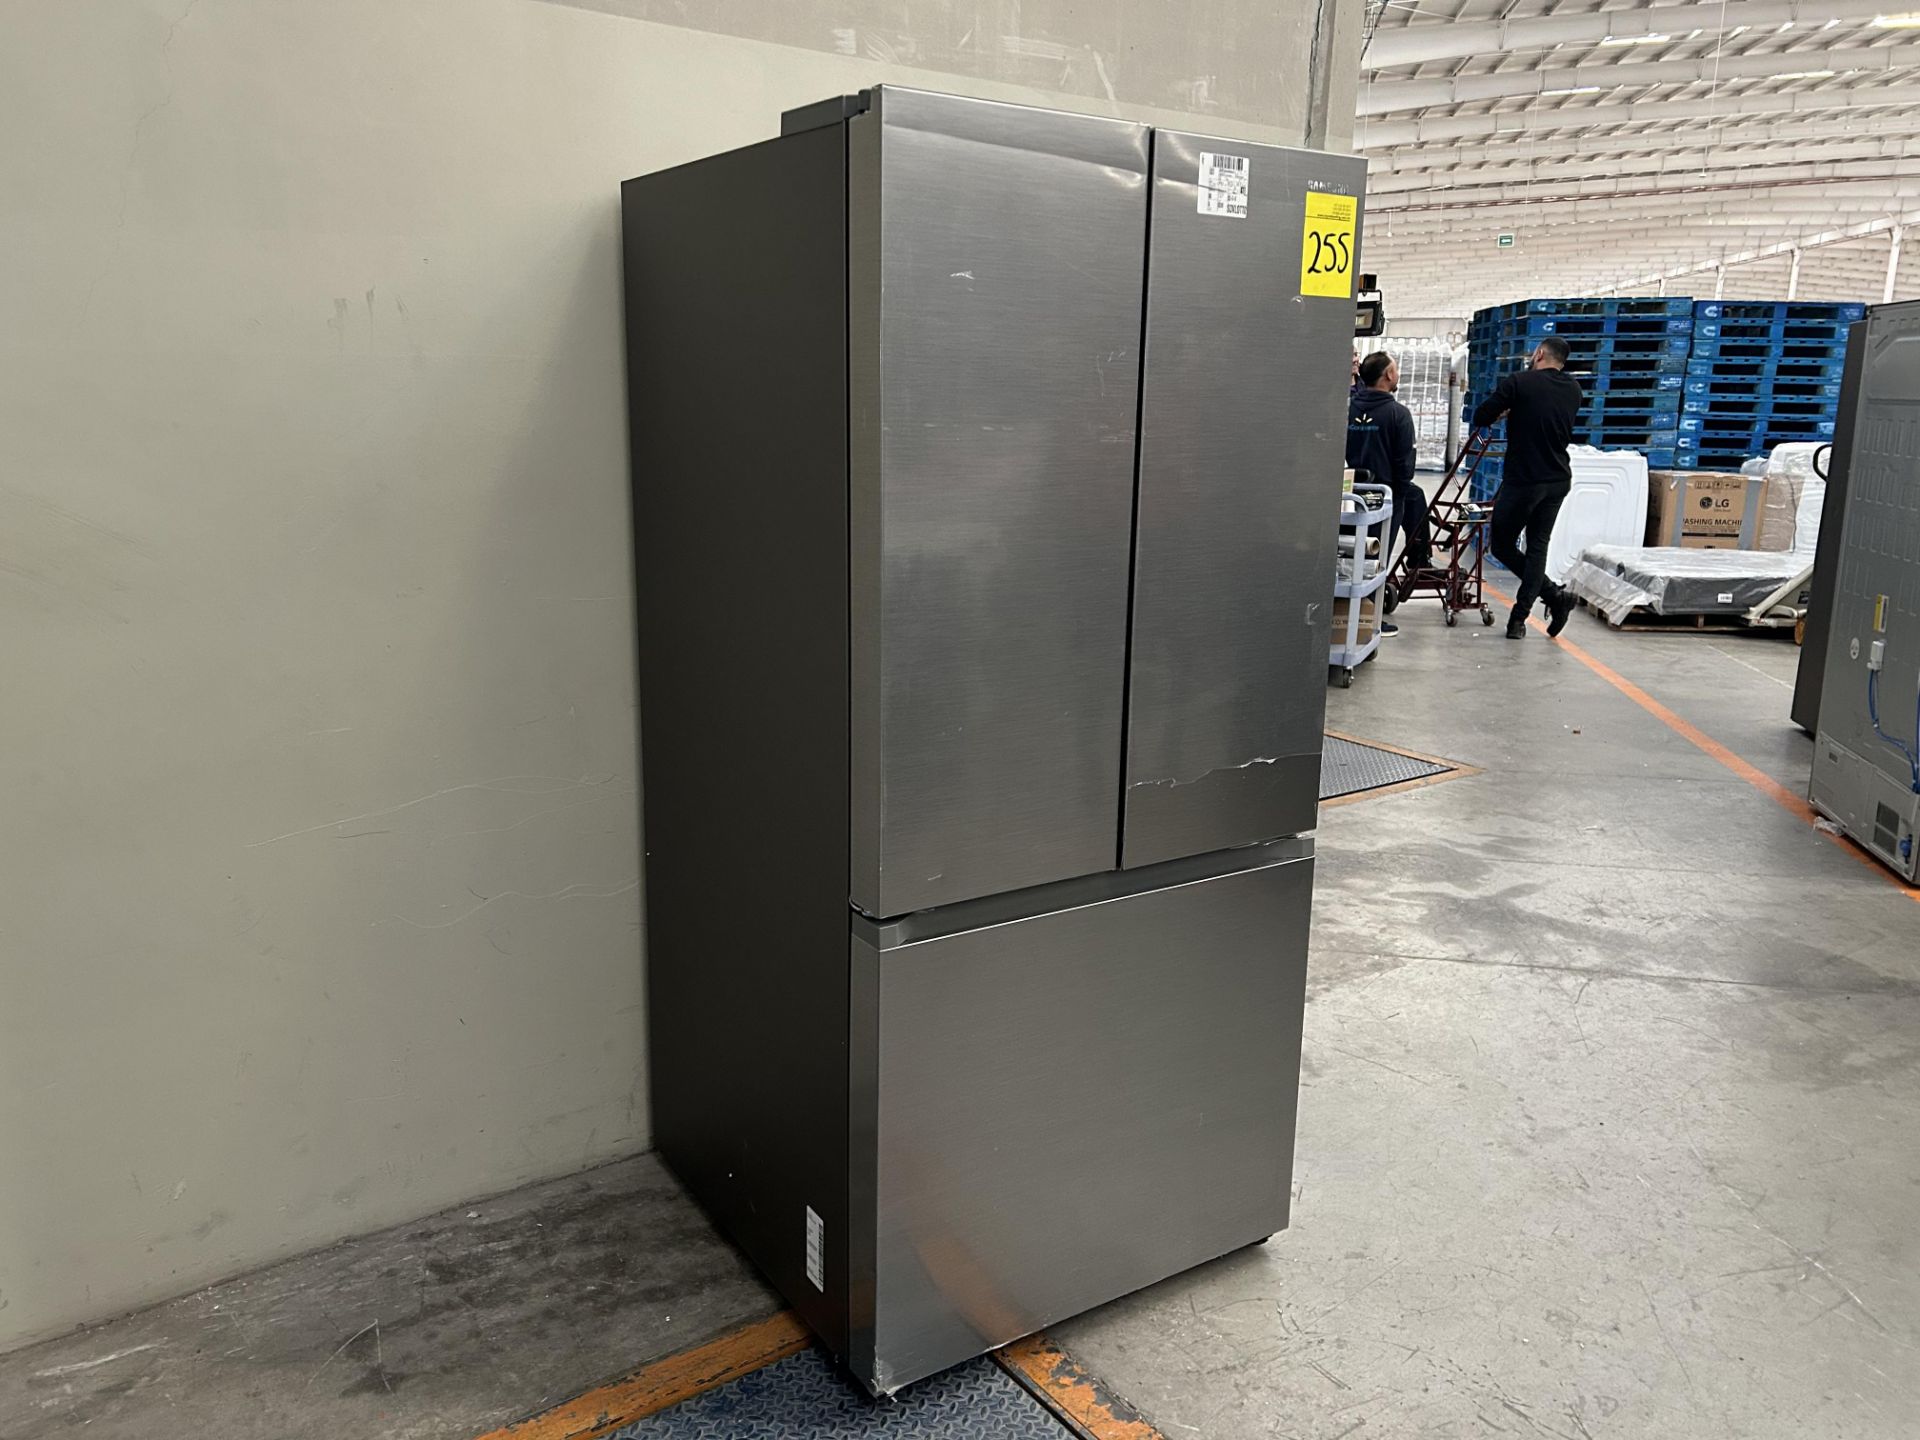 Lote de 1 refrigerador Marca SAMSUNG, Modelo RF25C5151S9, Serie 0BRD4BAW700048T, Color GRIS (No se - Image 2 of 4